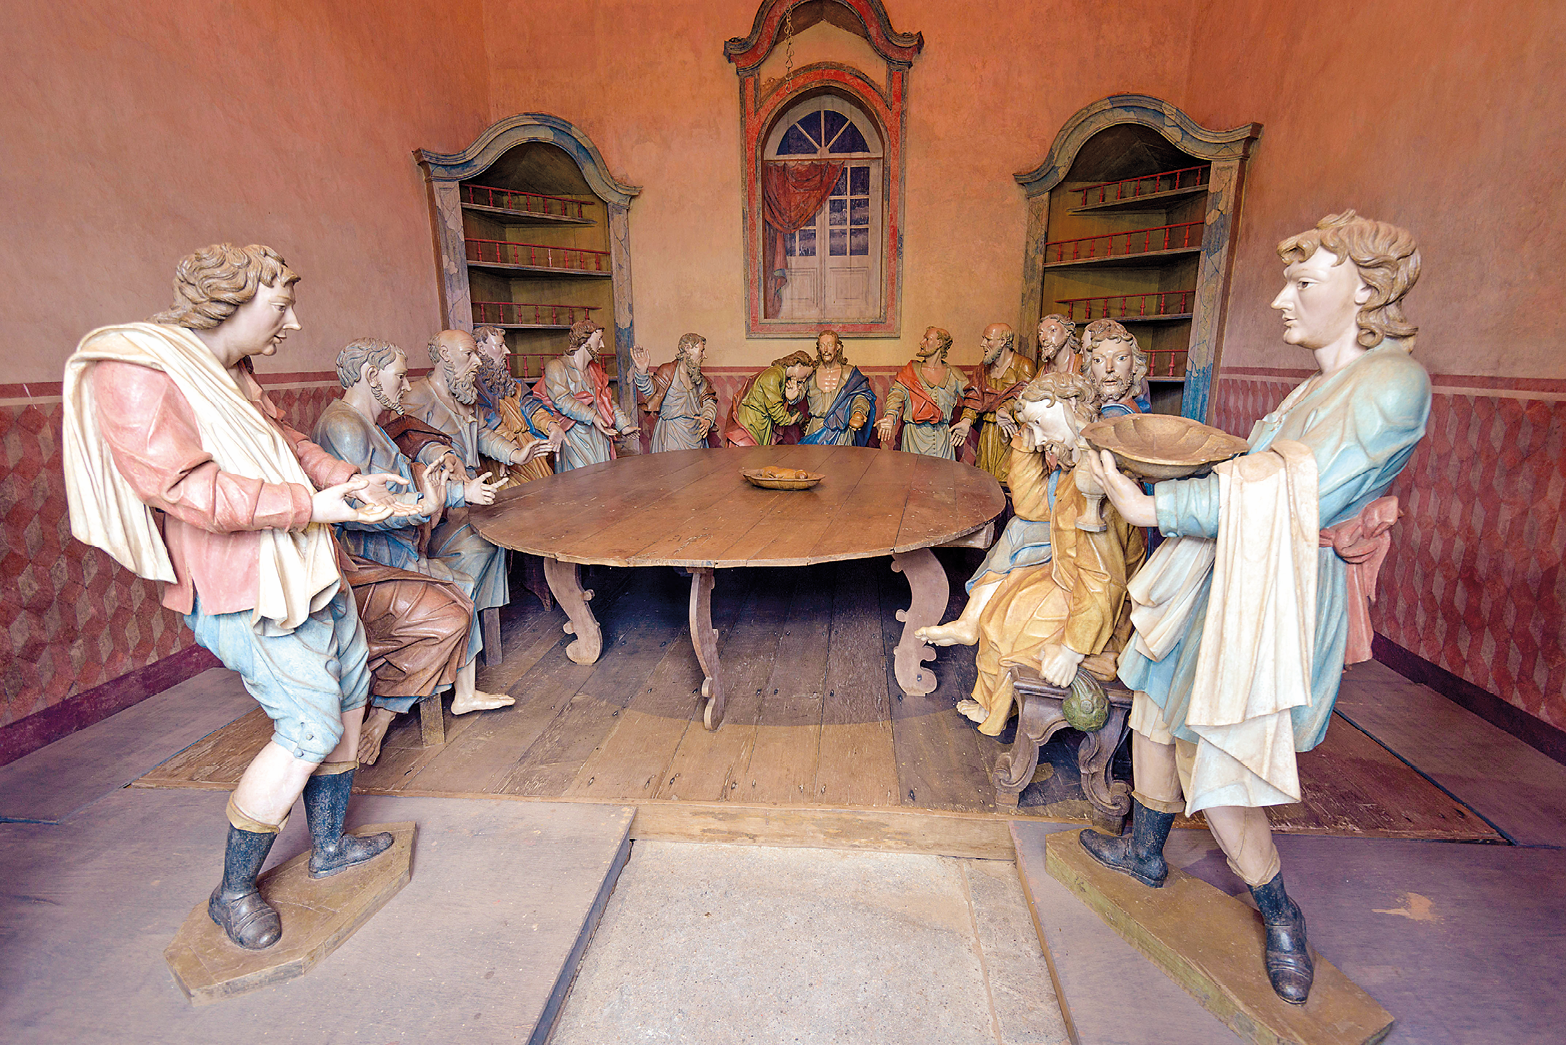 Fotografia. Escultura entalhada na madeira retratando um grupo de homens em pé ao redor de uma mesa redonda de madeira marrom. Eles vestem roupas coloridas e a maioria está com as mãos estendidas na direção da mesa